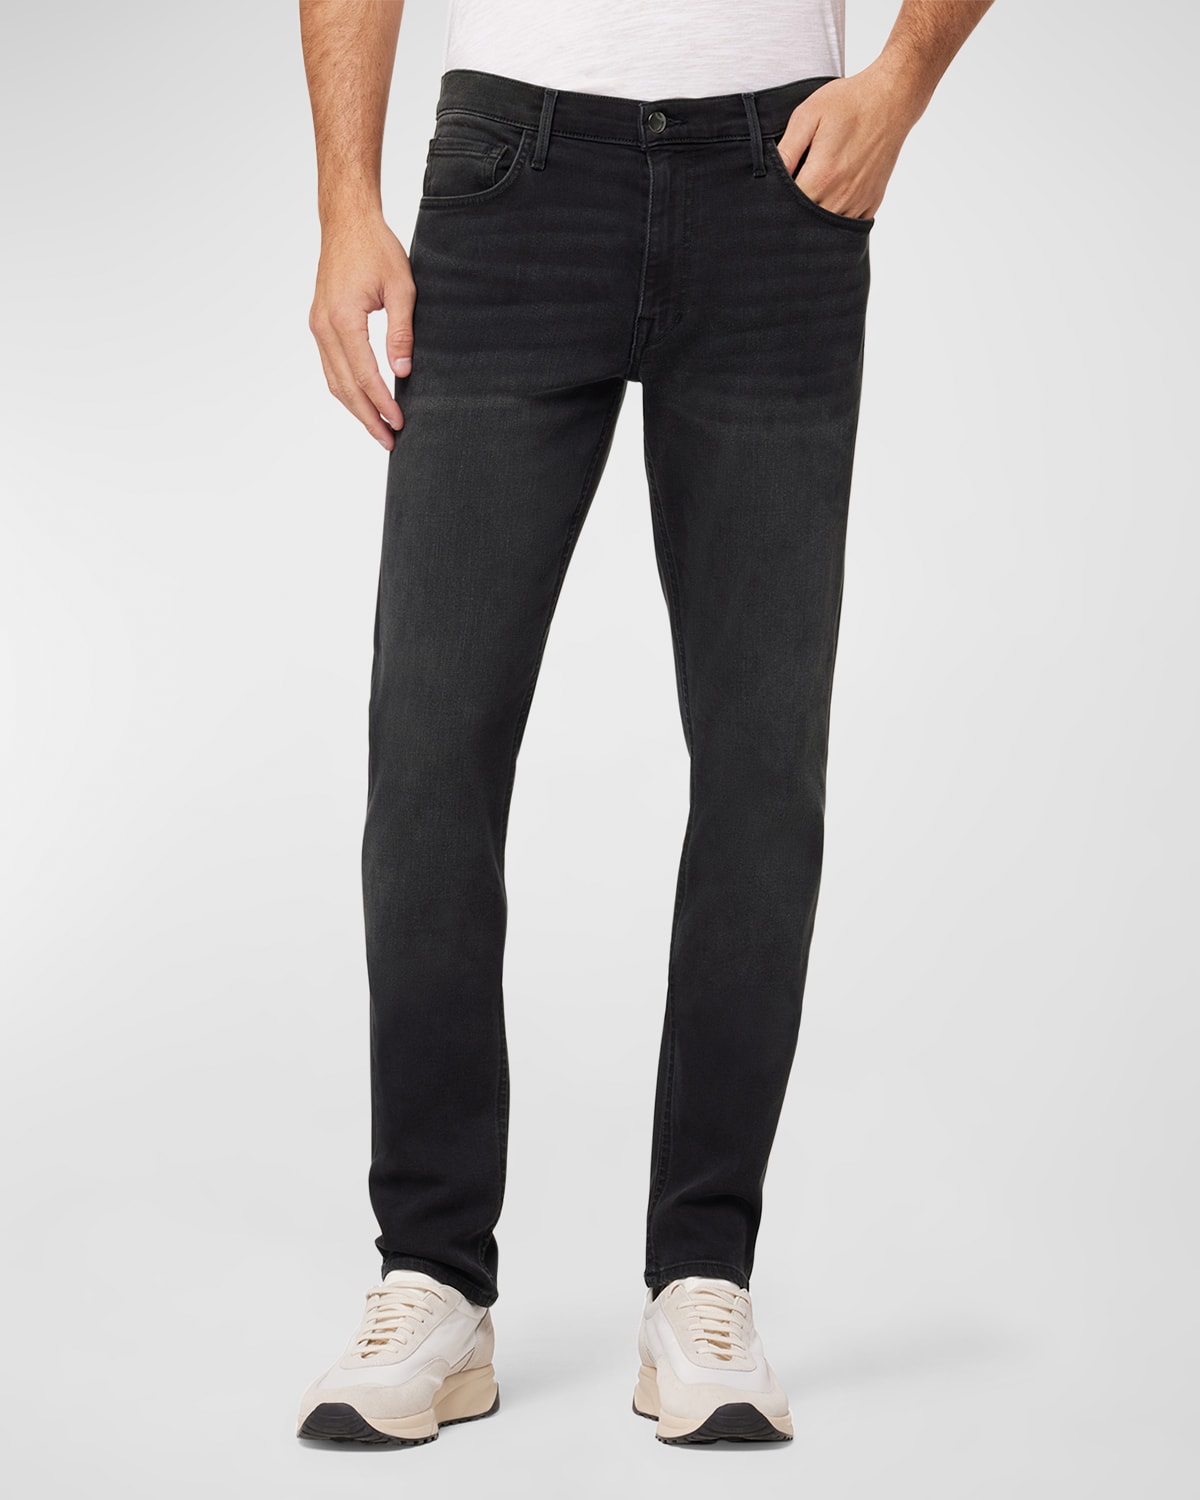 Joe Sp 39 Sp S Jeans Spandex Jeans | Neiman Marcus